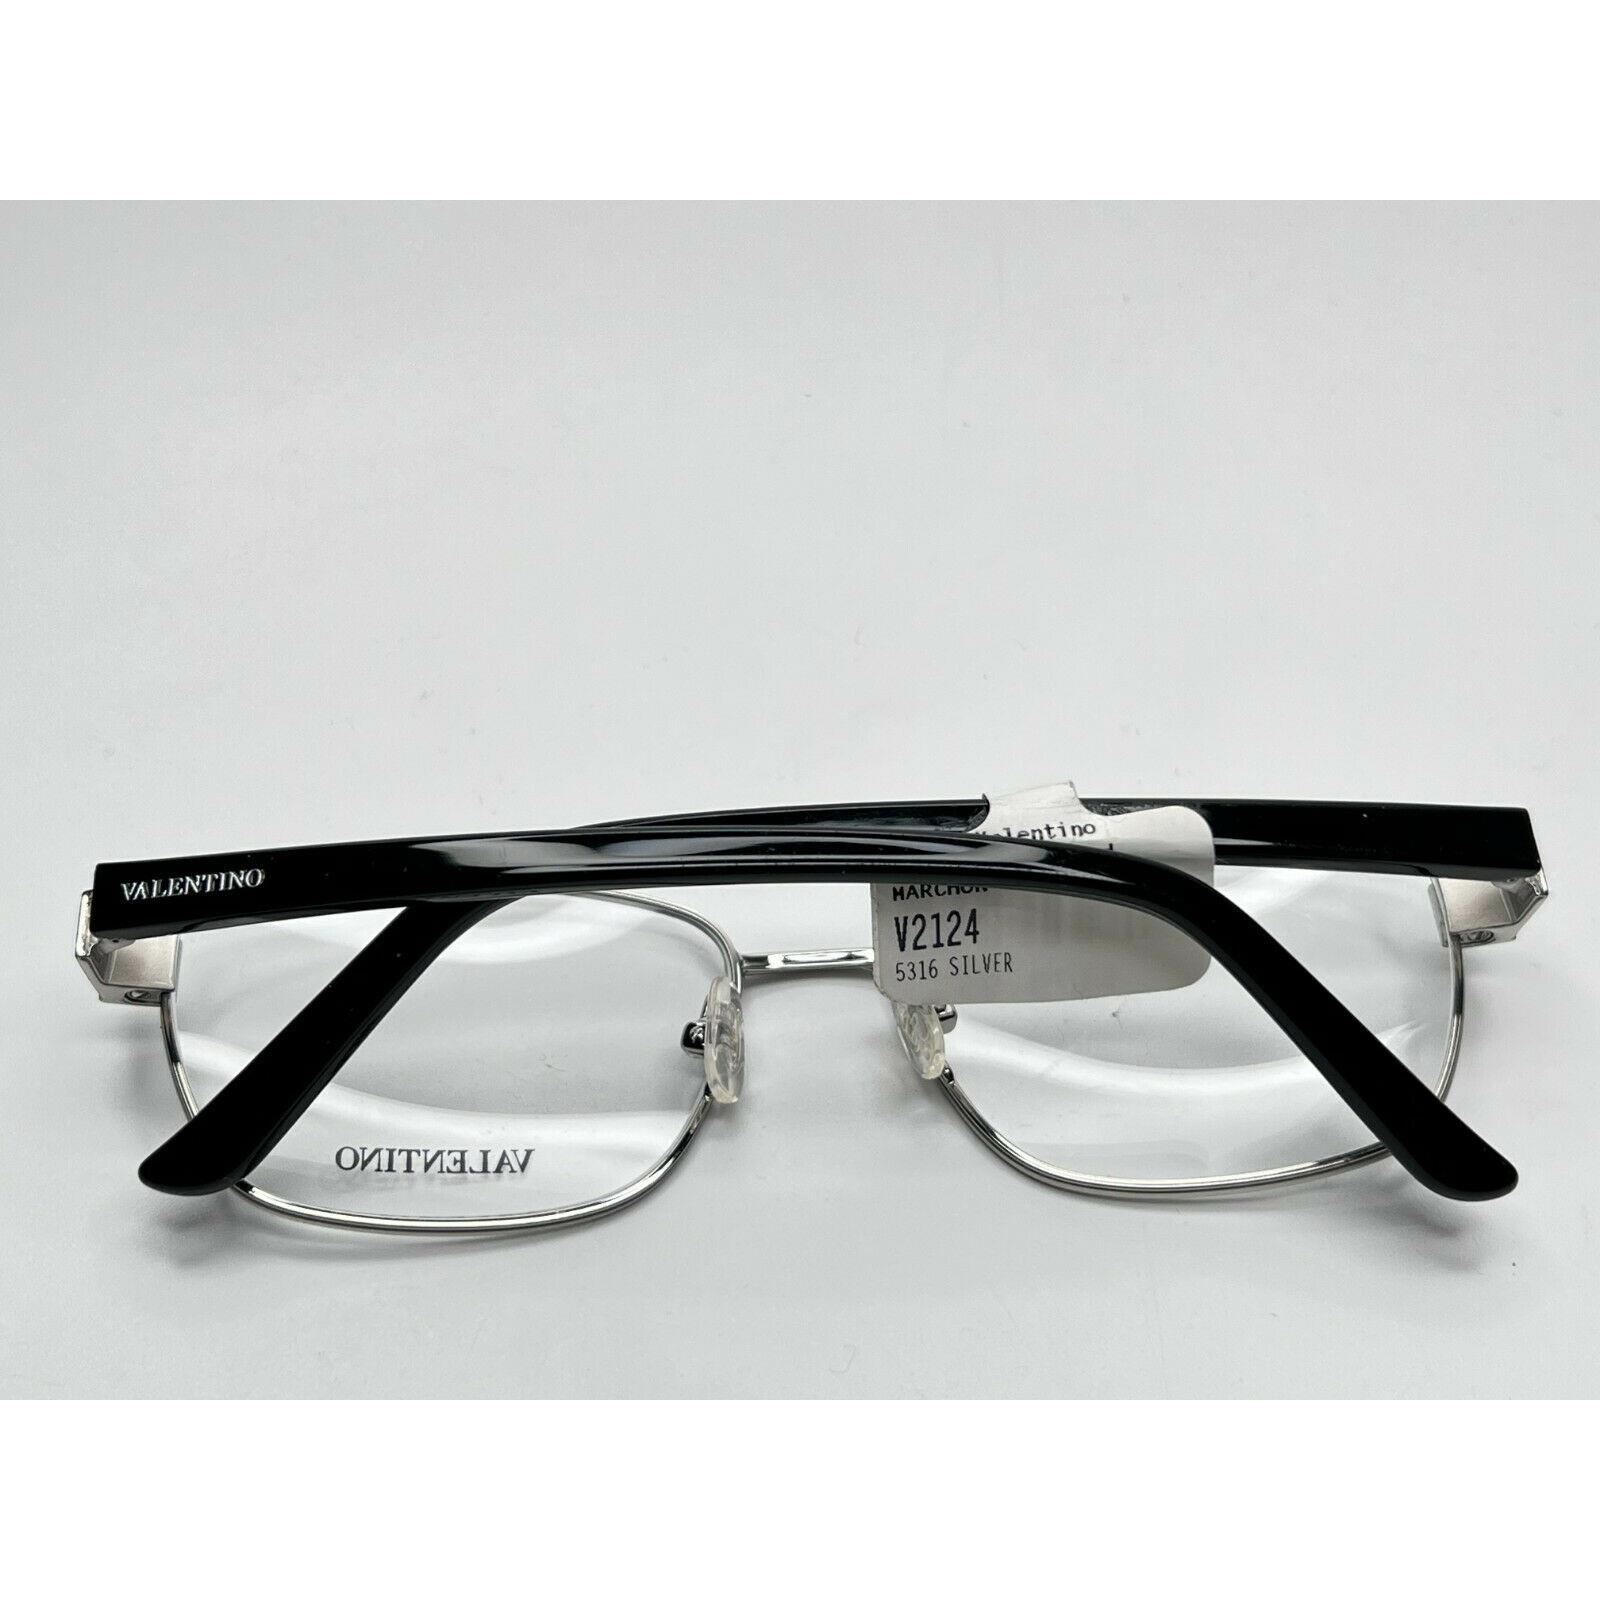 Valentino eyeglasses  - Silver Frame 8